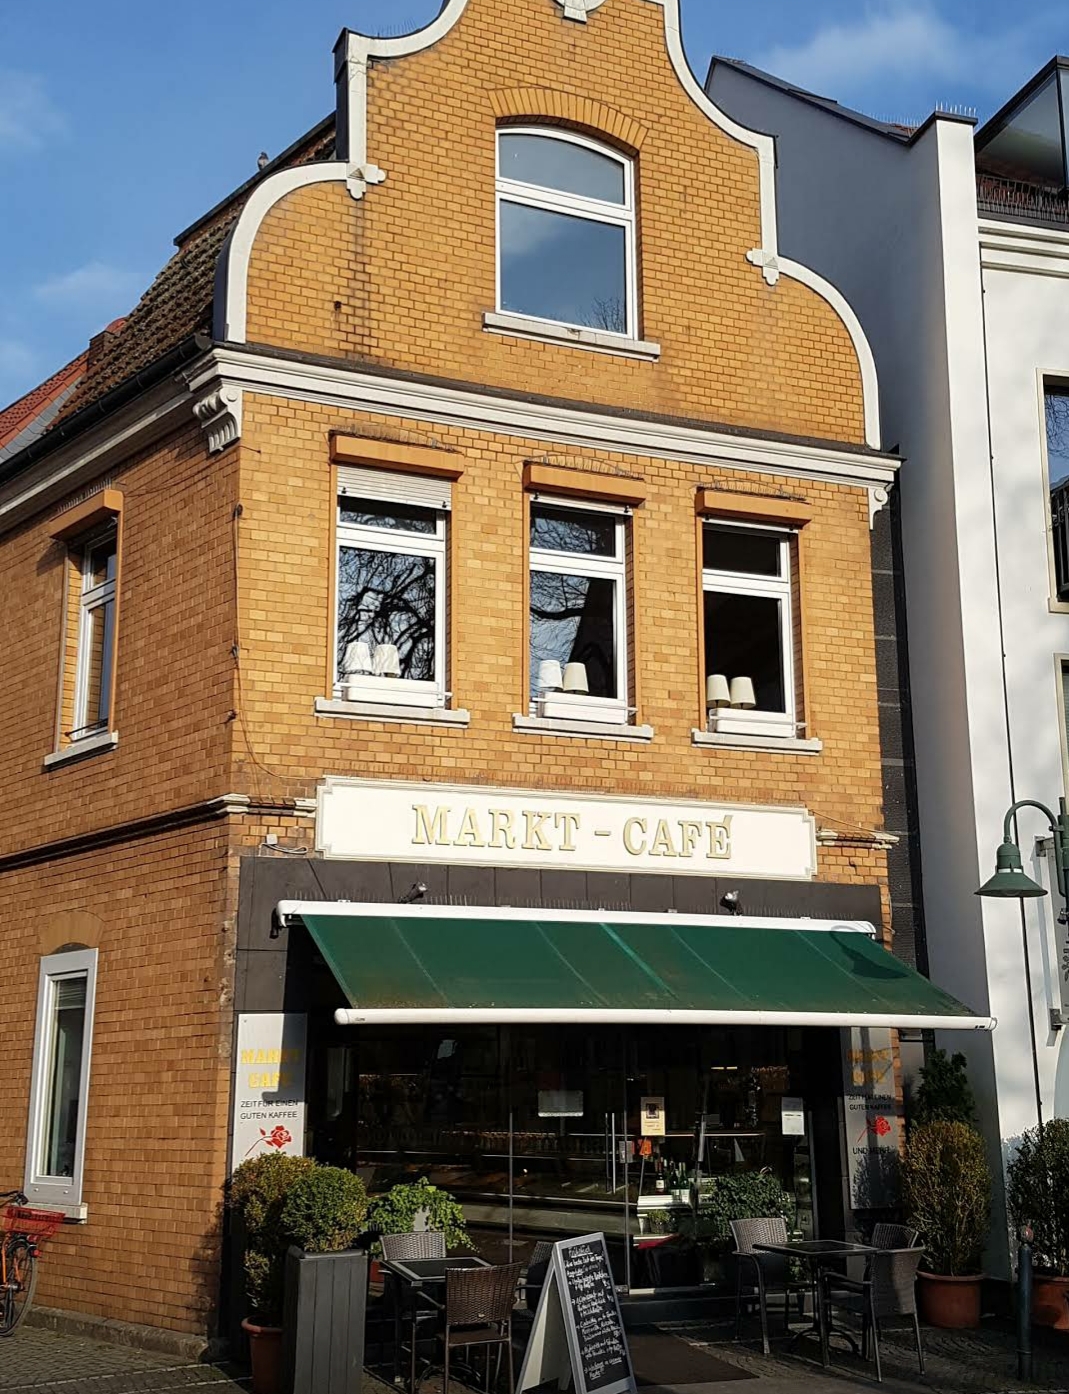 Markt-Cafe
Telgte